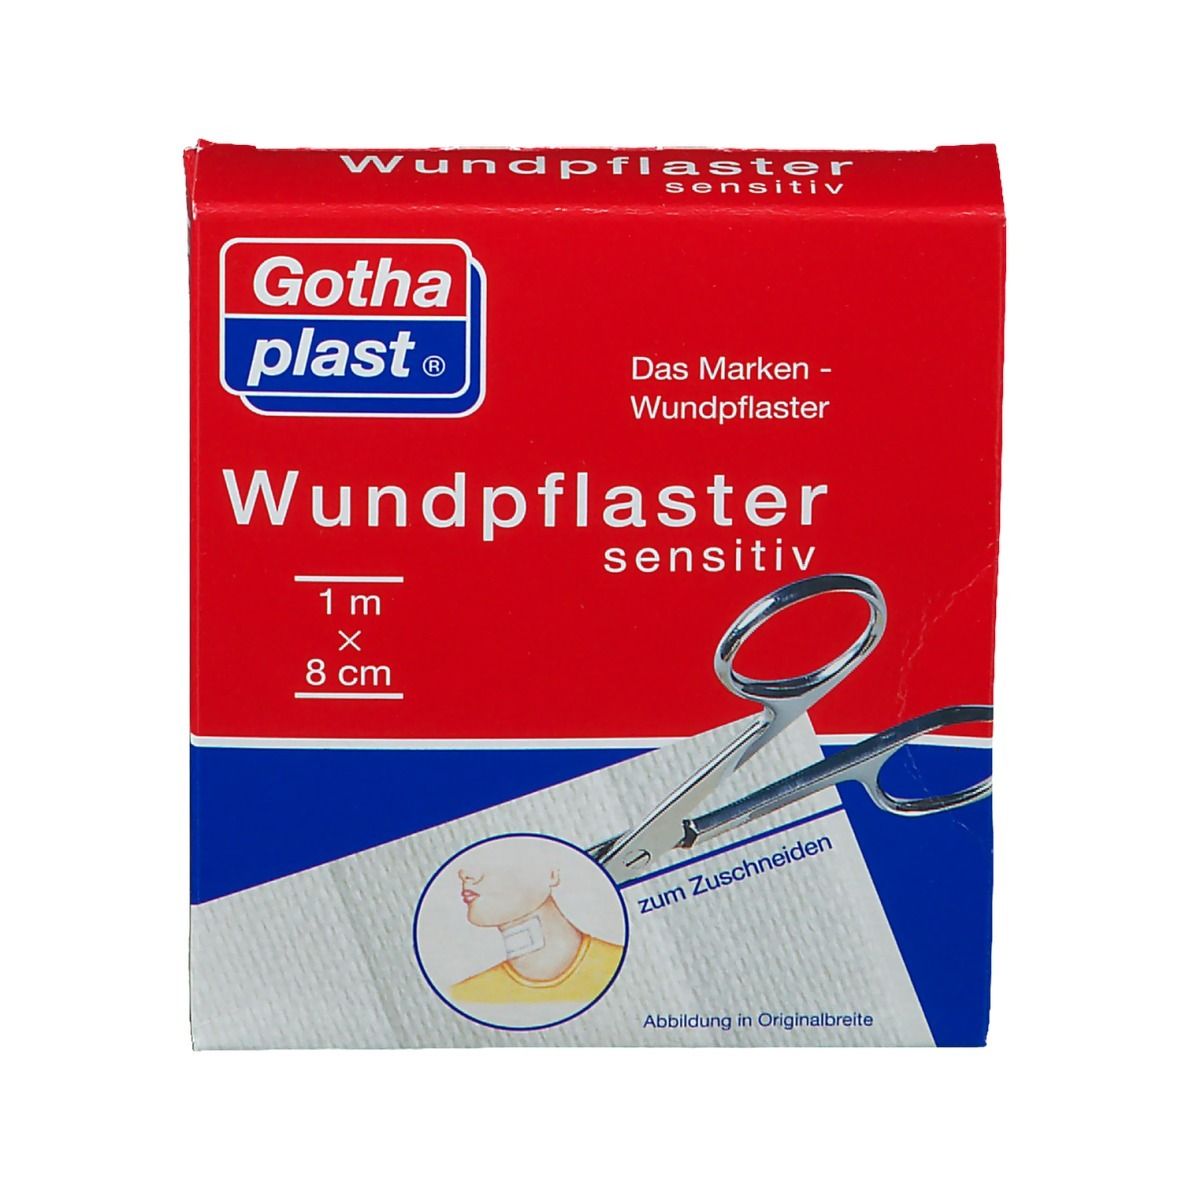 Gothaplast® Comfort und Sensitiv (hypoallergen) Pflaster 1 m x 8 cm